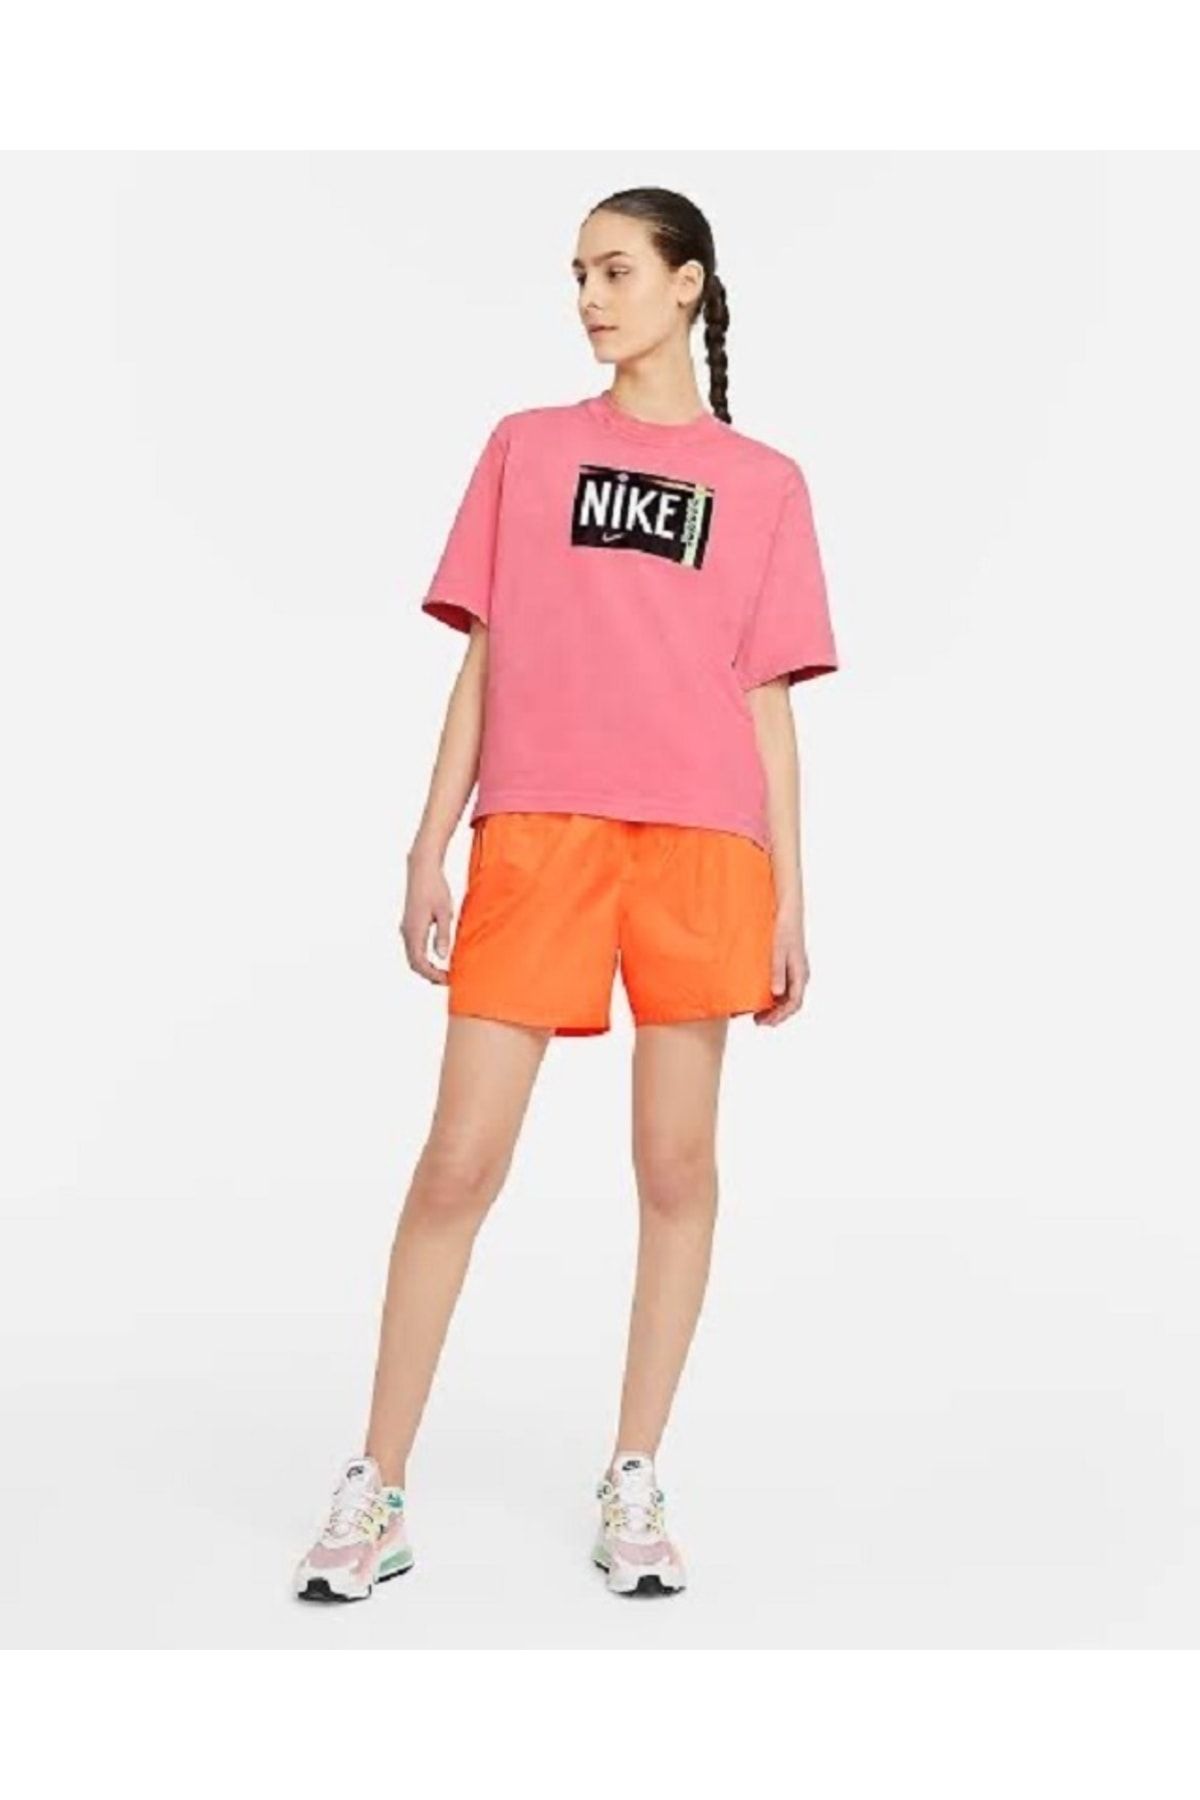 Nike Turuncu Kadın Şortu - Sportswear Parlak Dokuma Kadın Şortu